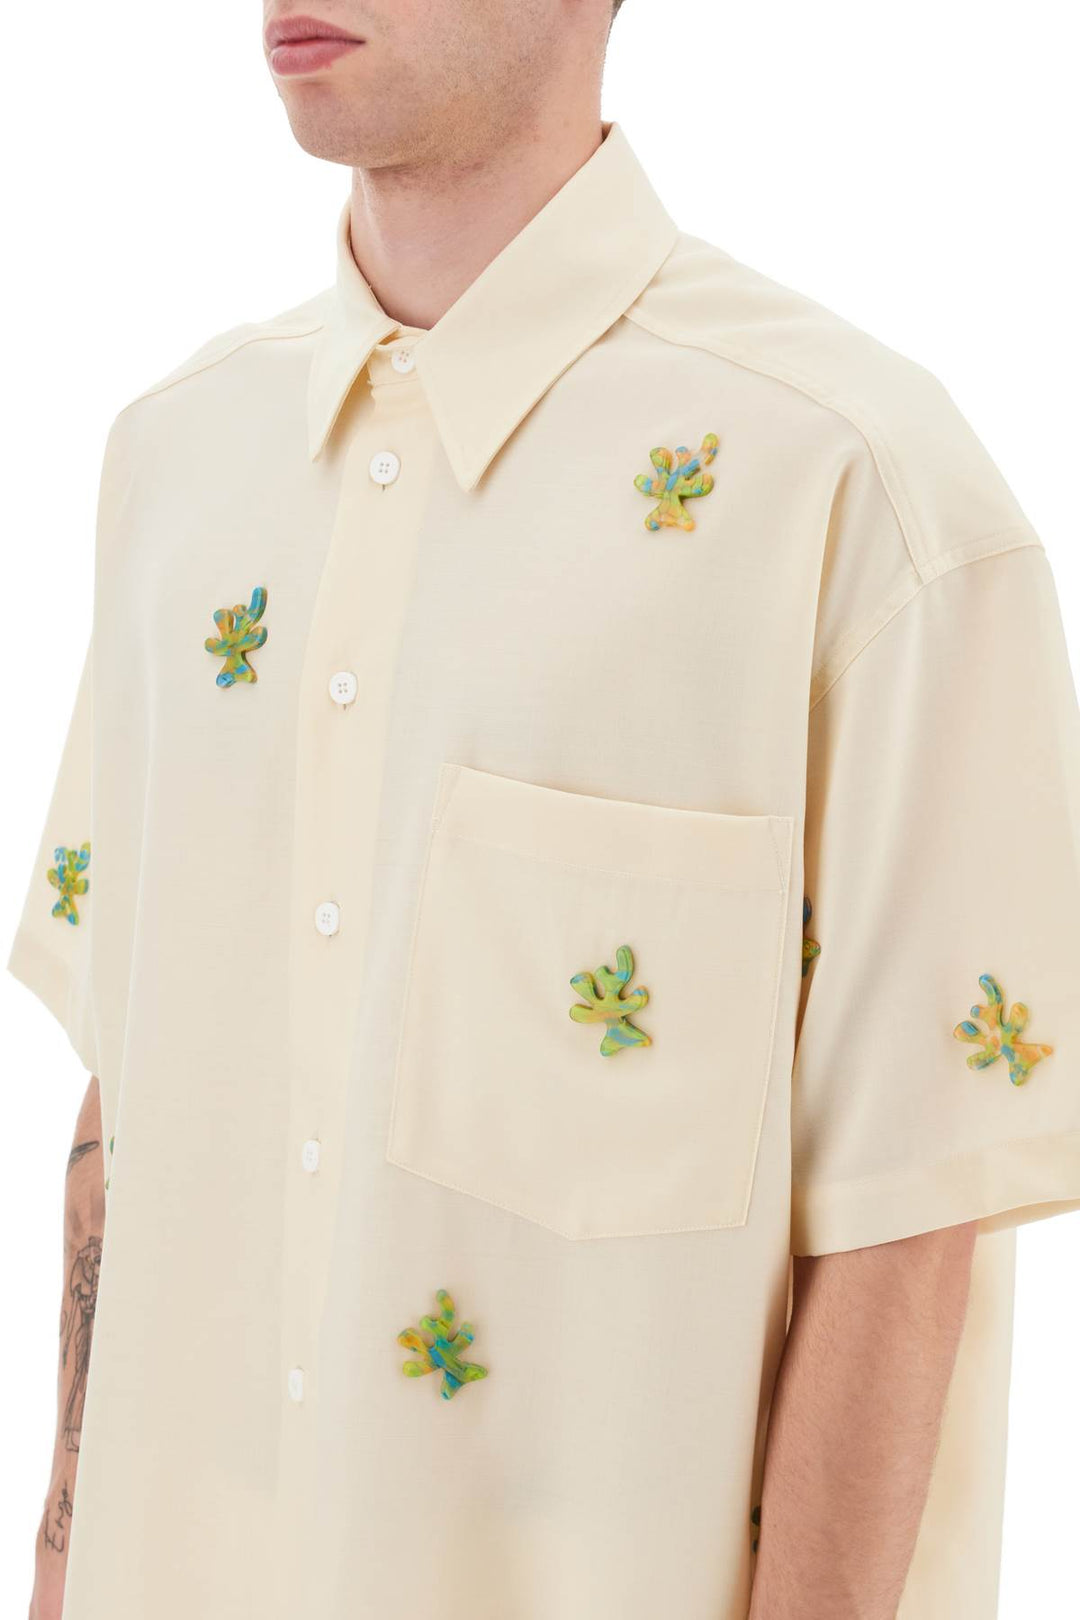 Bonsai 'alberello' shirt-3